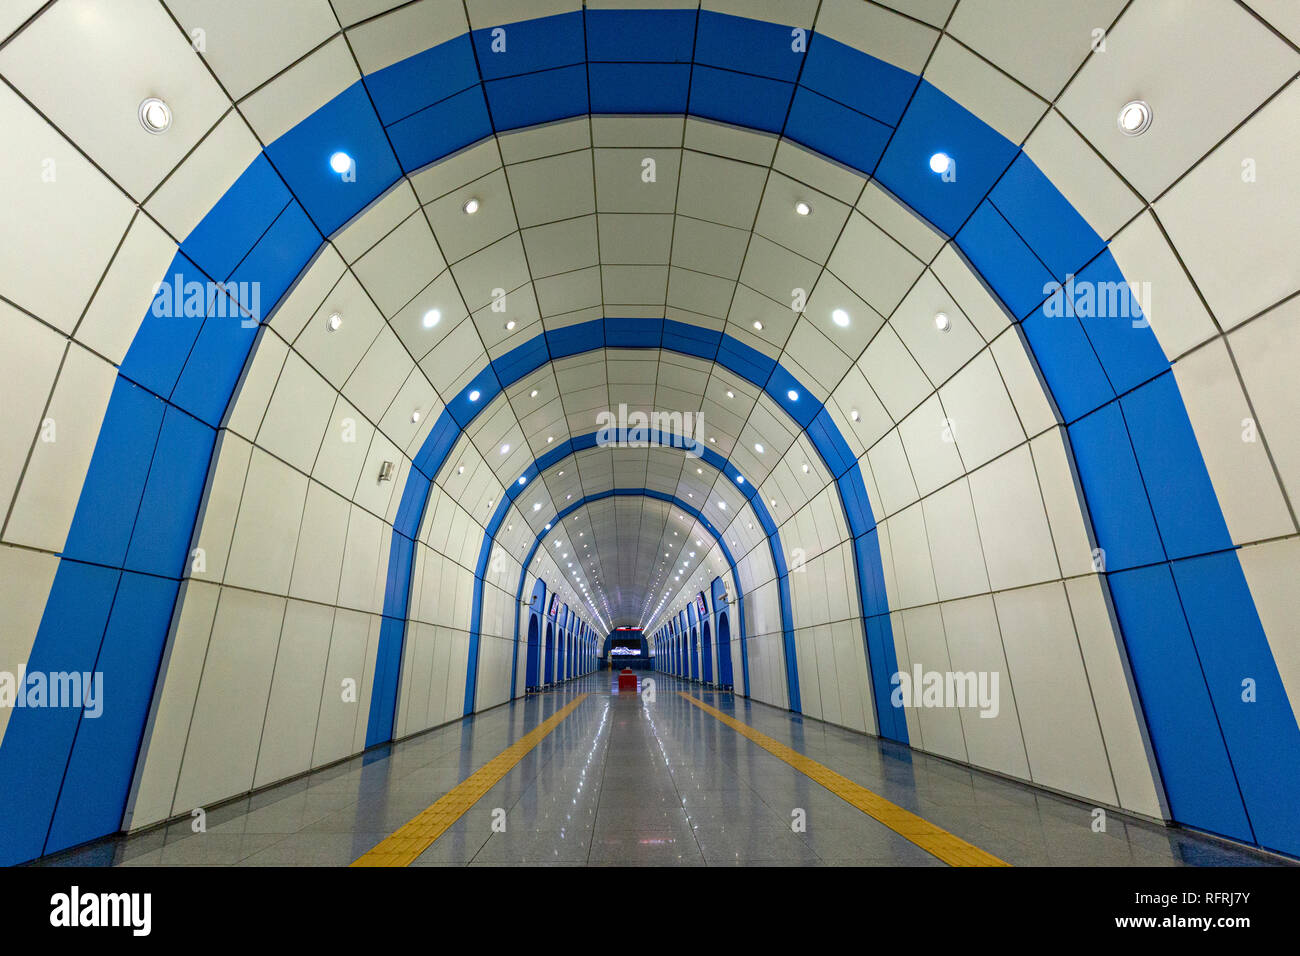 La station de métro de Baïkonour, à Almaty, Kazakhstan. La station de métro est nommé d'après le centre spatial de Baïkonour dans Kazkahstan Banque D'Images